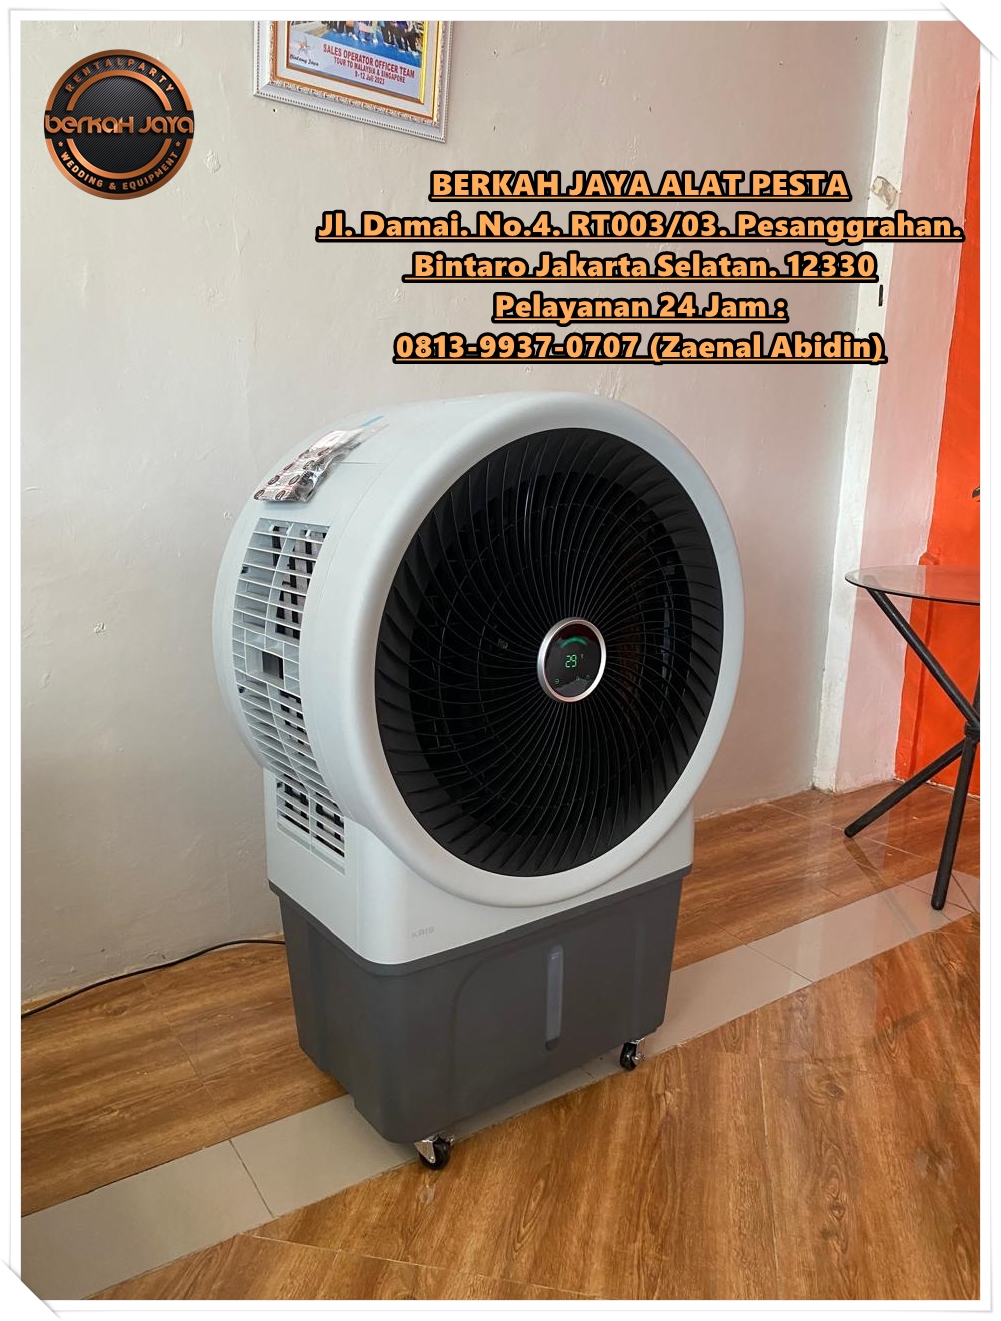 Sewa Misty Fan Air Cooler Hemat Daya Jakarta Selatan